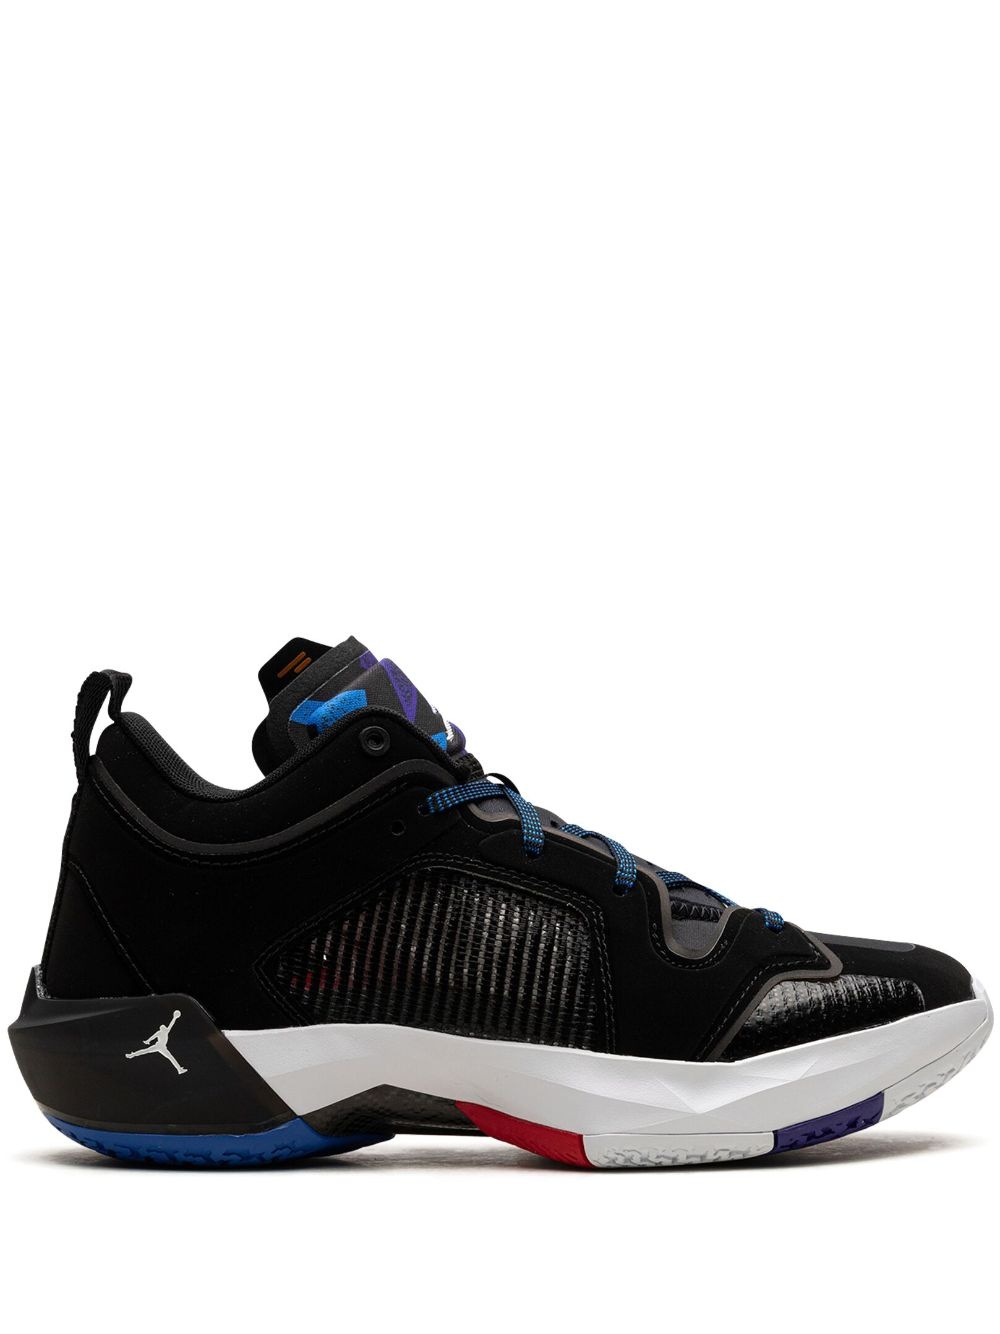 Air Jordan XXXVII "Nothing But Net" sneakers - 1